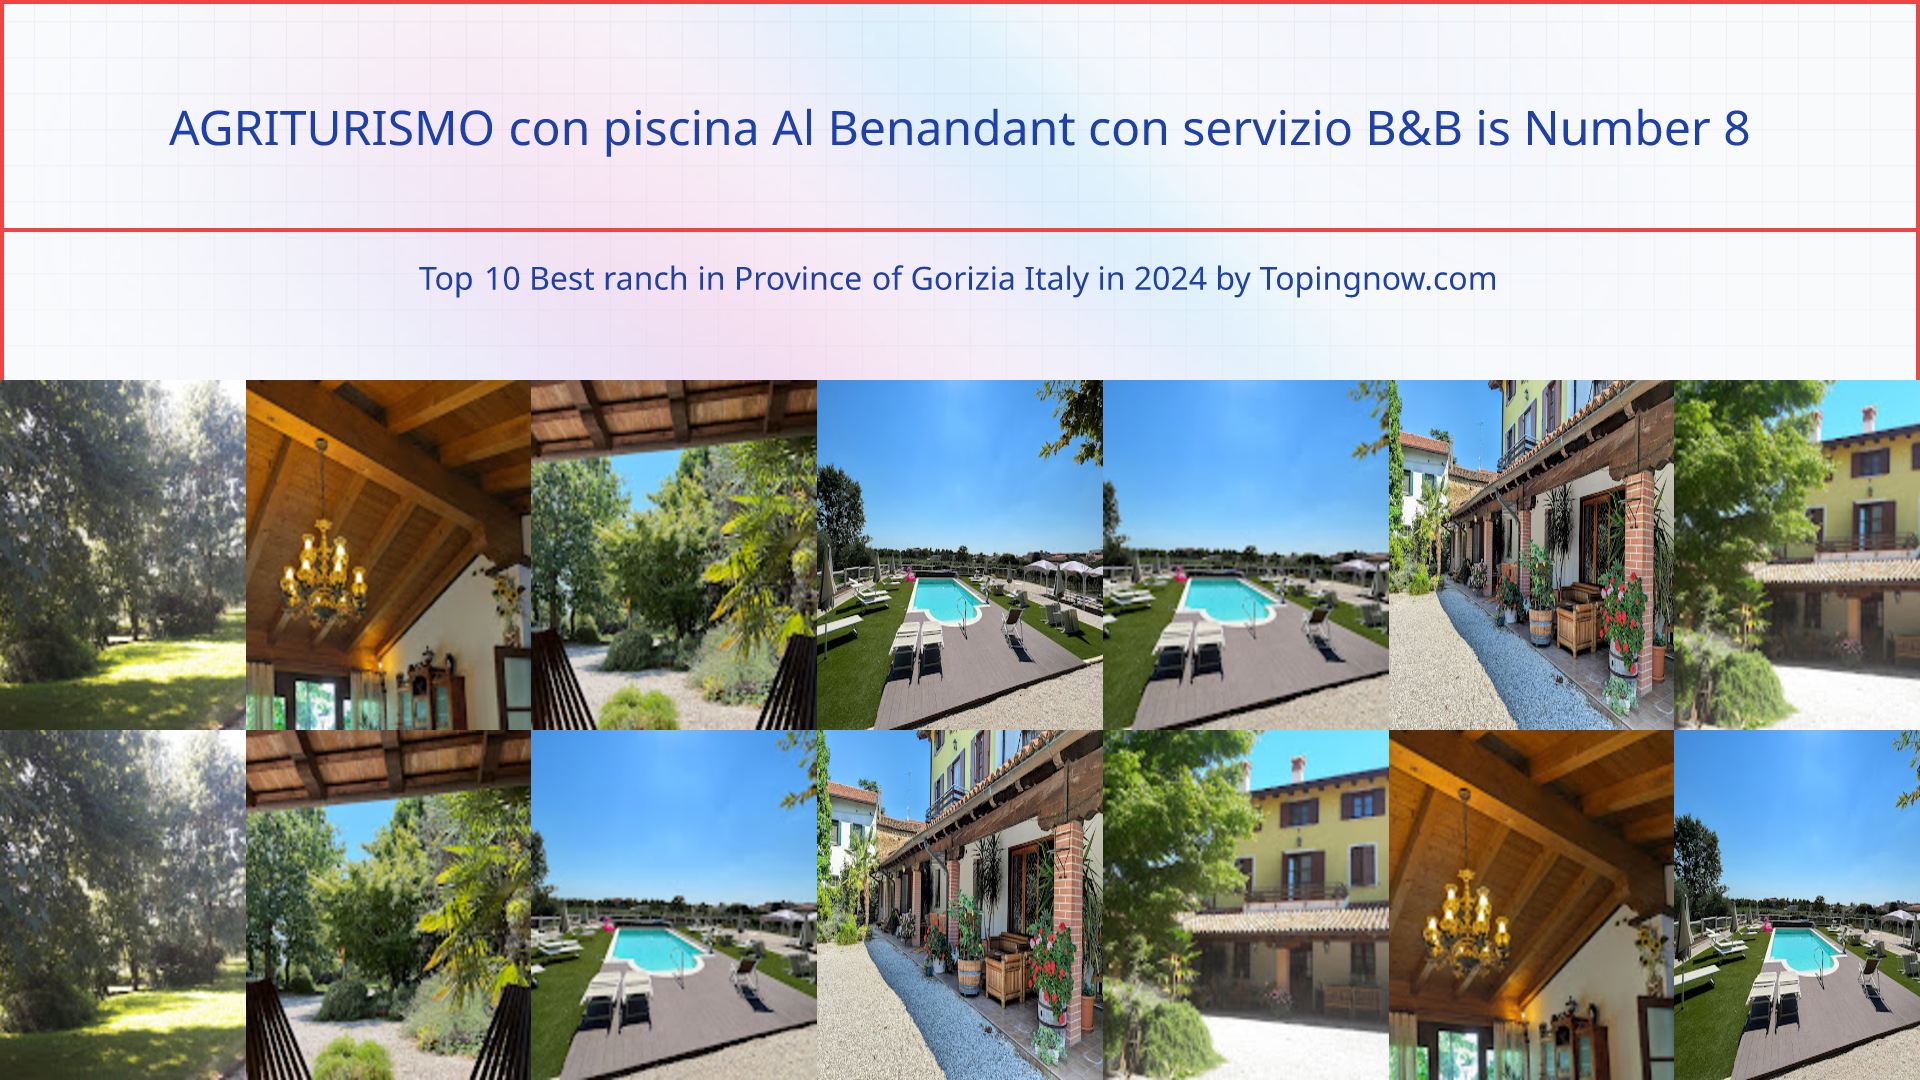 AGRITURISMO con piscina Al Benandant con servizio B&B: Top 10 Best ranch in Province of Gorizia Italy in 2024